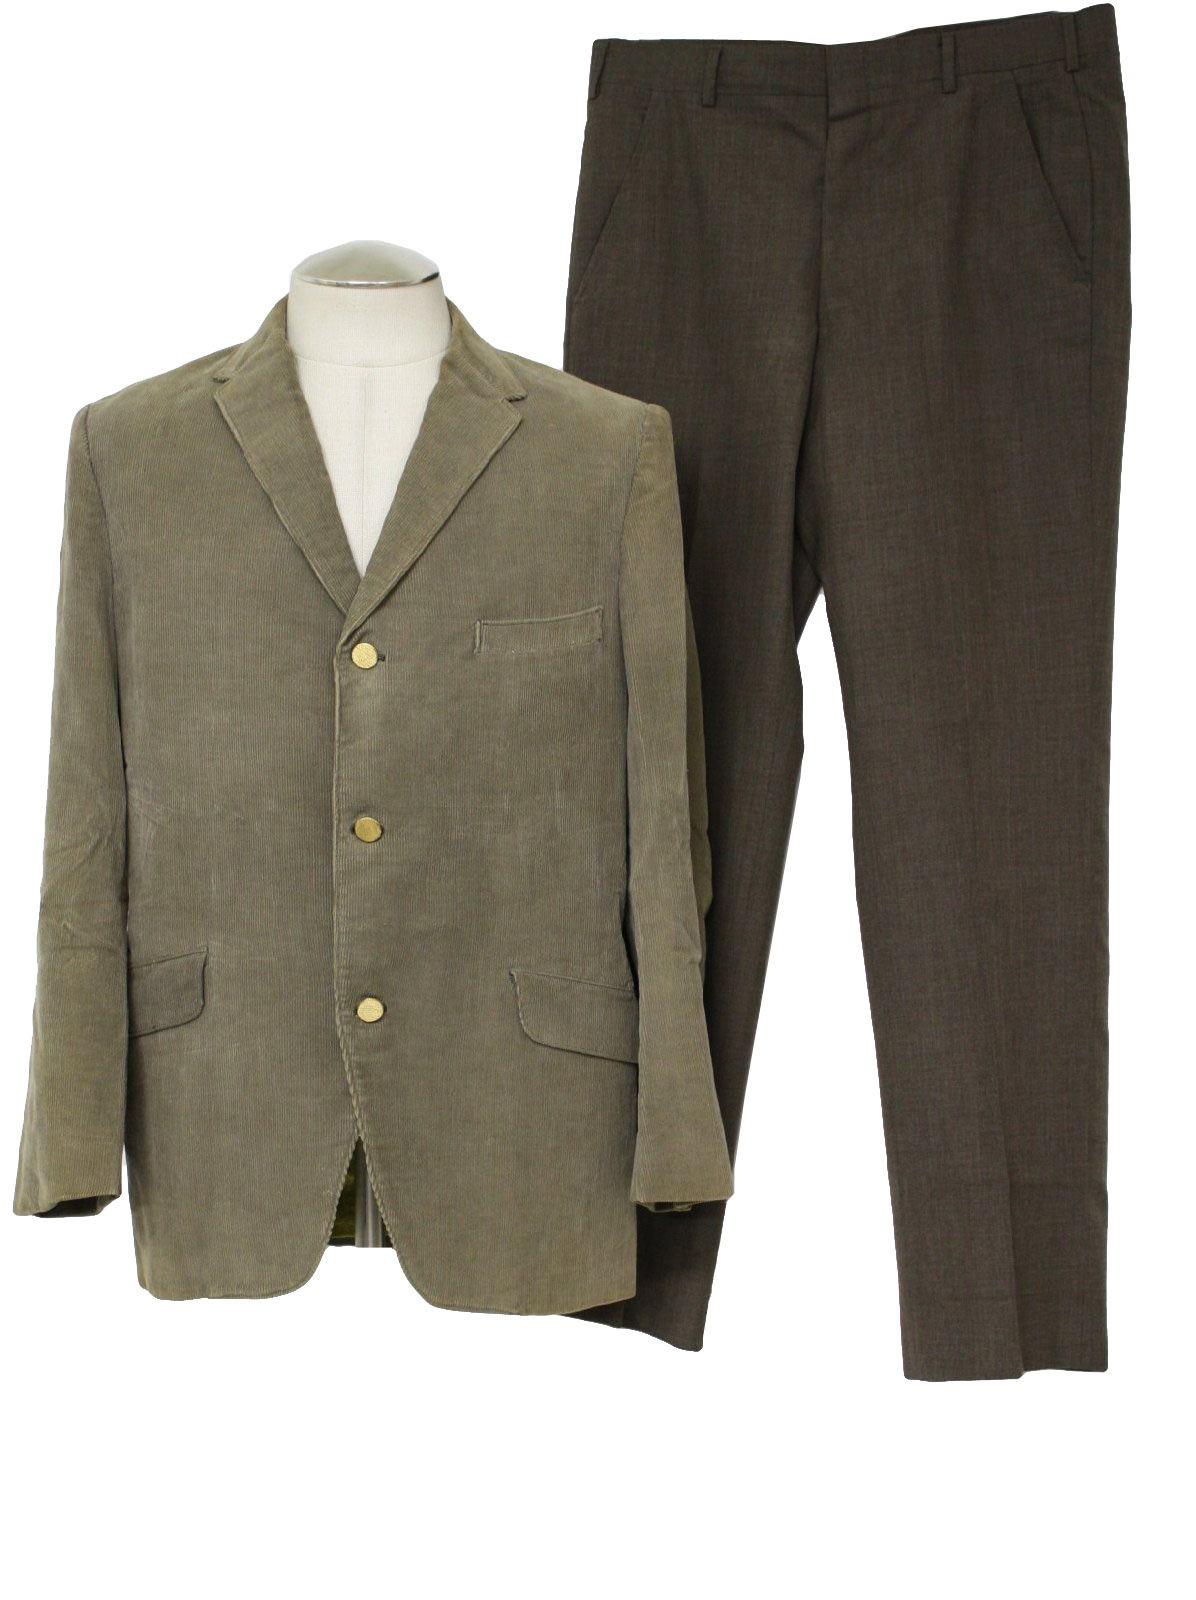 Retro 60s Suit: 60s -No Label- Mens two piece mod combo suit with khaki ...